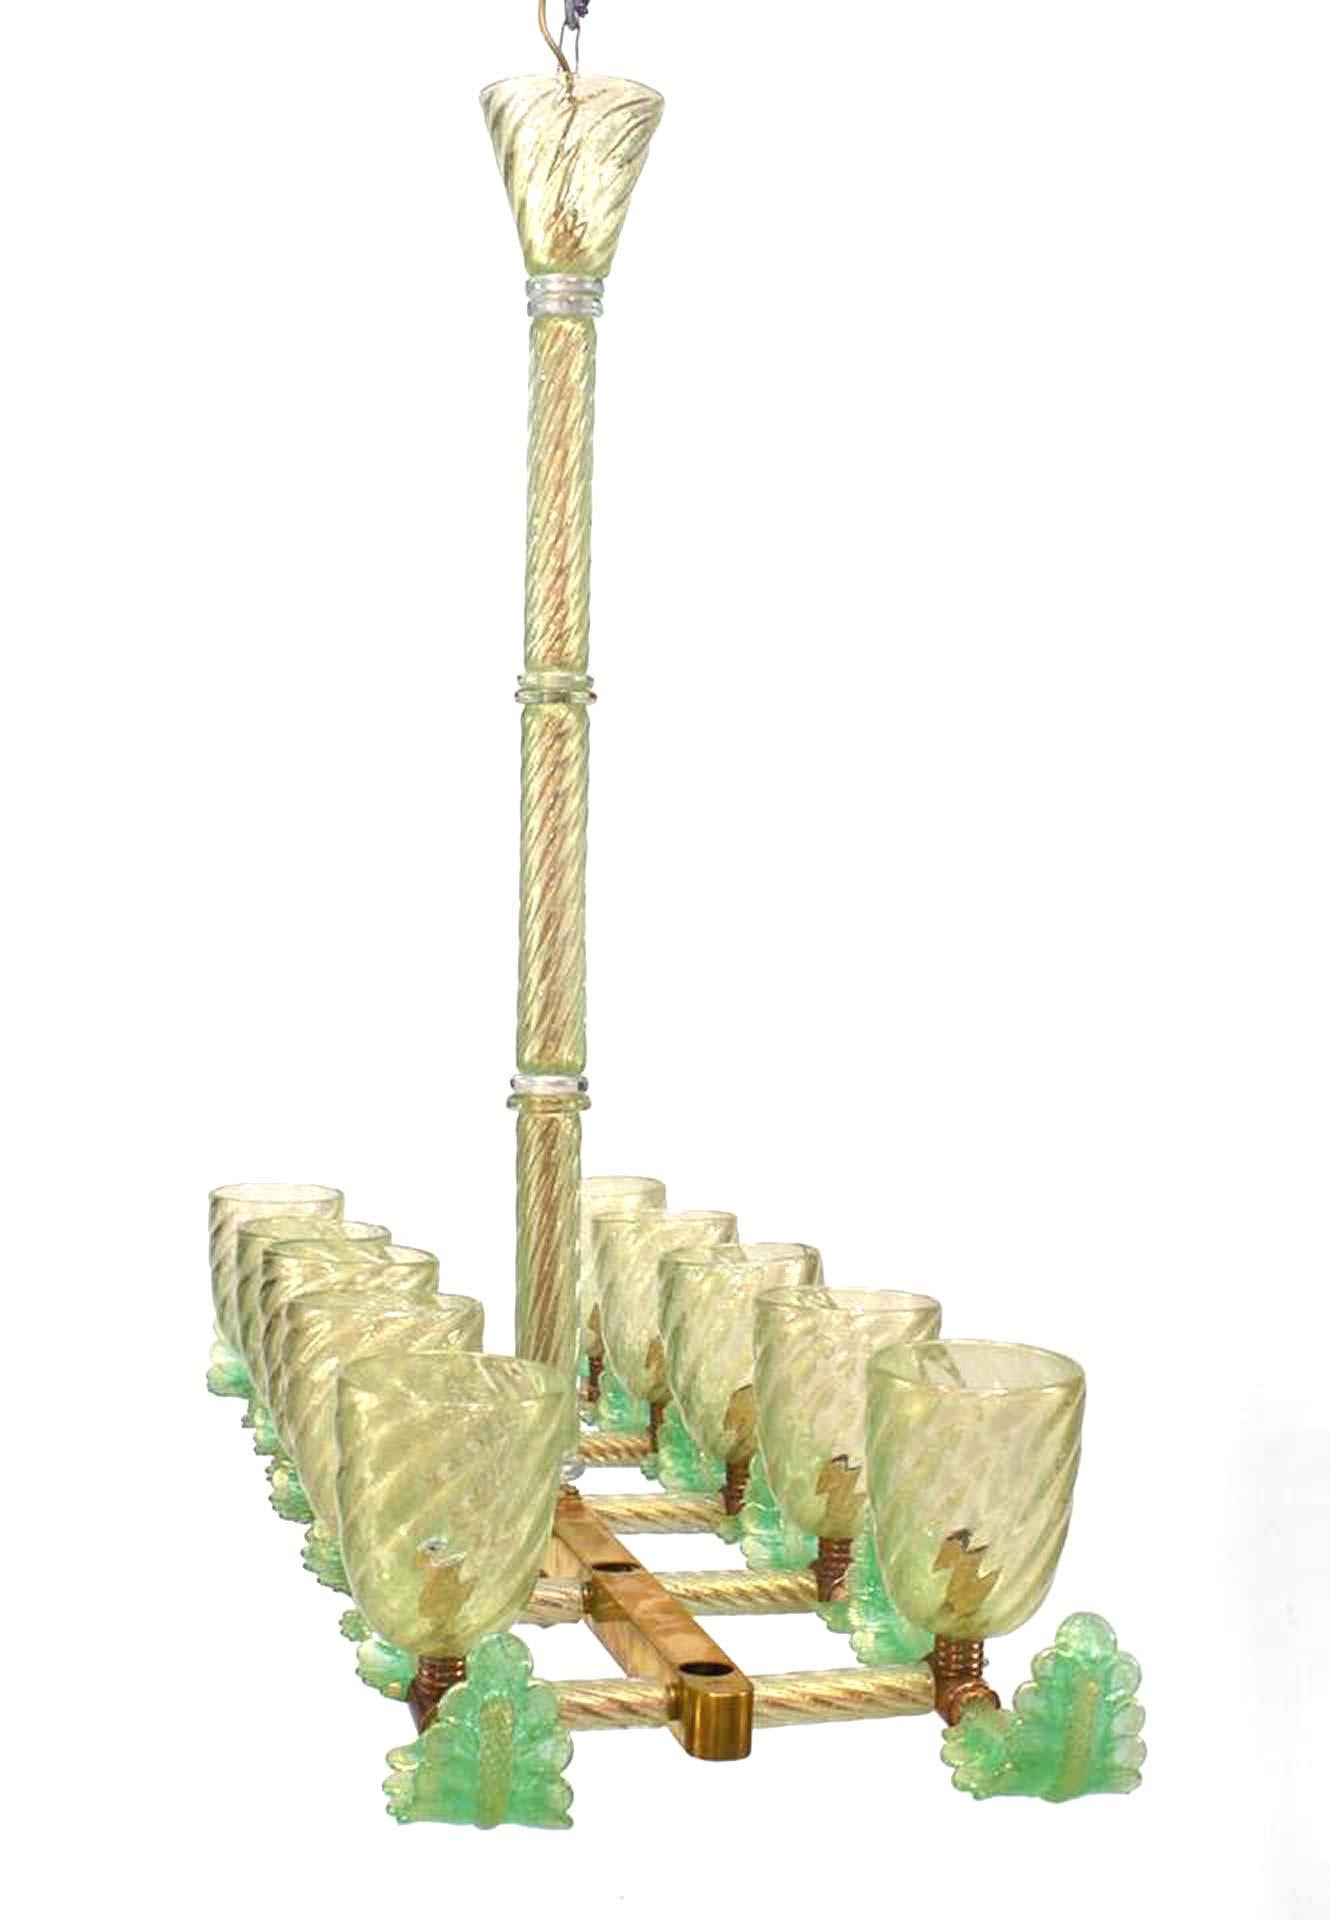 2 Lustre italien de Murano en verre bullé et laiton à 10 lumières de forme rectangulaire avec des abat-jours cannelés en spirale, une tige centrale et des branches en forme de plumes. (PRIX CHACUN)
